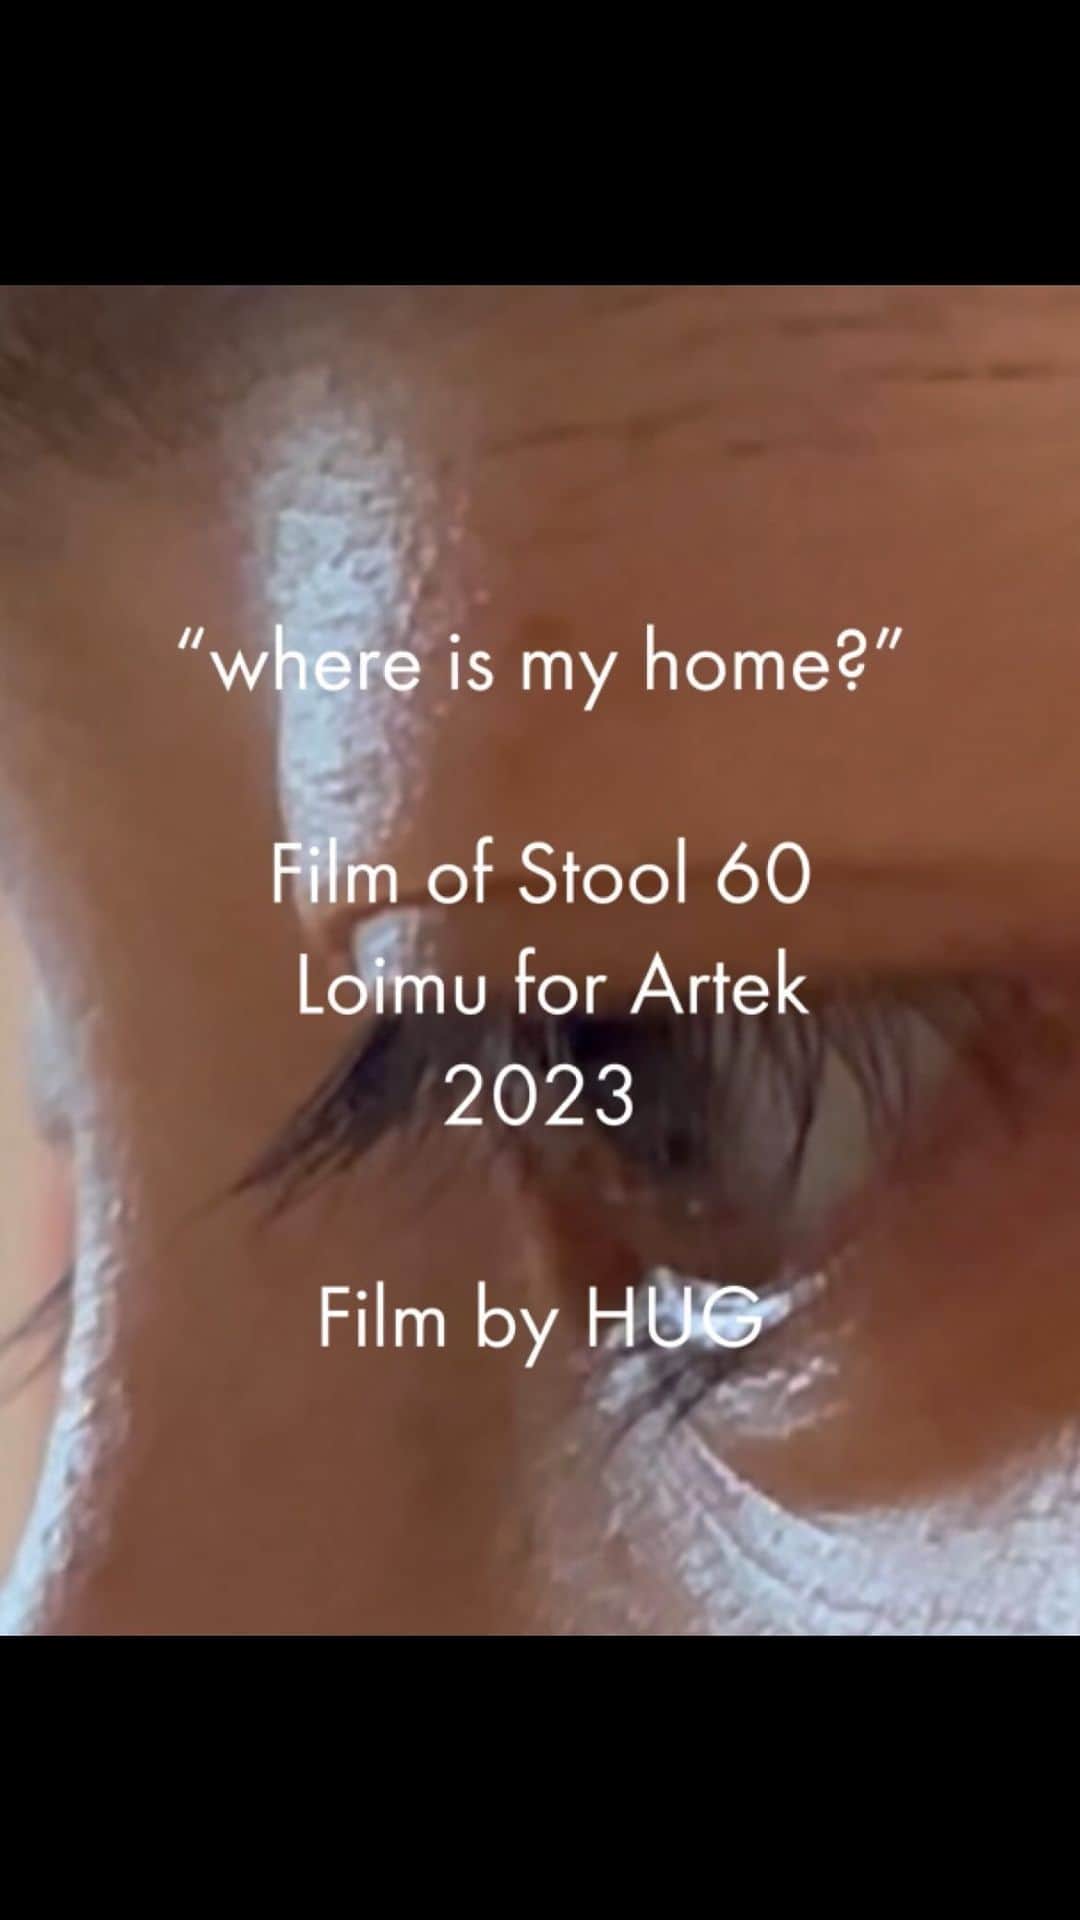 haru.のインスタグラム：「“Where is my home?” Film of Stool 60 Loimu for Artek Film by HUG  2023年は「スツール 60」の90周年です。 90周年モデルのひとつである「スツール 60 ロイム」は、炎のような模様がまれに現れる希少な白樺を素材としています。同封されたオイル塗装セットを使うと、ロイムの模様はさらに鮮やかに浮かび上ります。自らの手を動かすことで愛着が高まり、自然素材である木の美しさと理解が深まることをコンセプトとしています。 インディペンデントマガジン「HIGH(er) magzine」の発行や、幅広いジャンルの才能とのプロジェクトを手掛けるクリエイティブスタジオHUG。代表のharu.さんに、スツール 60ロイムのオイル塗装を体験し、映像で表現してもらいました。(artek)  ┈ ┈ ┈ ┈ ┈ ┈ ┈ ┈ ┈ ┈ ┈ ┈ ┈ ┈ ┈ ┈ ┈  「わたしの生活は、わたしのものである」、この社会を生きているとそんな当たり前を忘れてしまいそうな瞬間がたくさんあります。手や身体を使って思考することは、“生活”の手触りを取り戻す作業なのだと、このビデオを制作しながら考えていました。(haru.)  ┈ ┈ ┈ ┈ ┈ ┈ ┈ ┈ ┈ ┈ ┈ ┈ ┈ ┈ ┈ ┈ ┈  “Where is my home?” Film of Stool 60 Loimu for Artek Film by HUG @hug_inc   direction / filming / editing: haru. (HUG) @hahaharu777   filming: miya (HUG) @38uia」